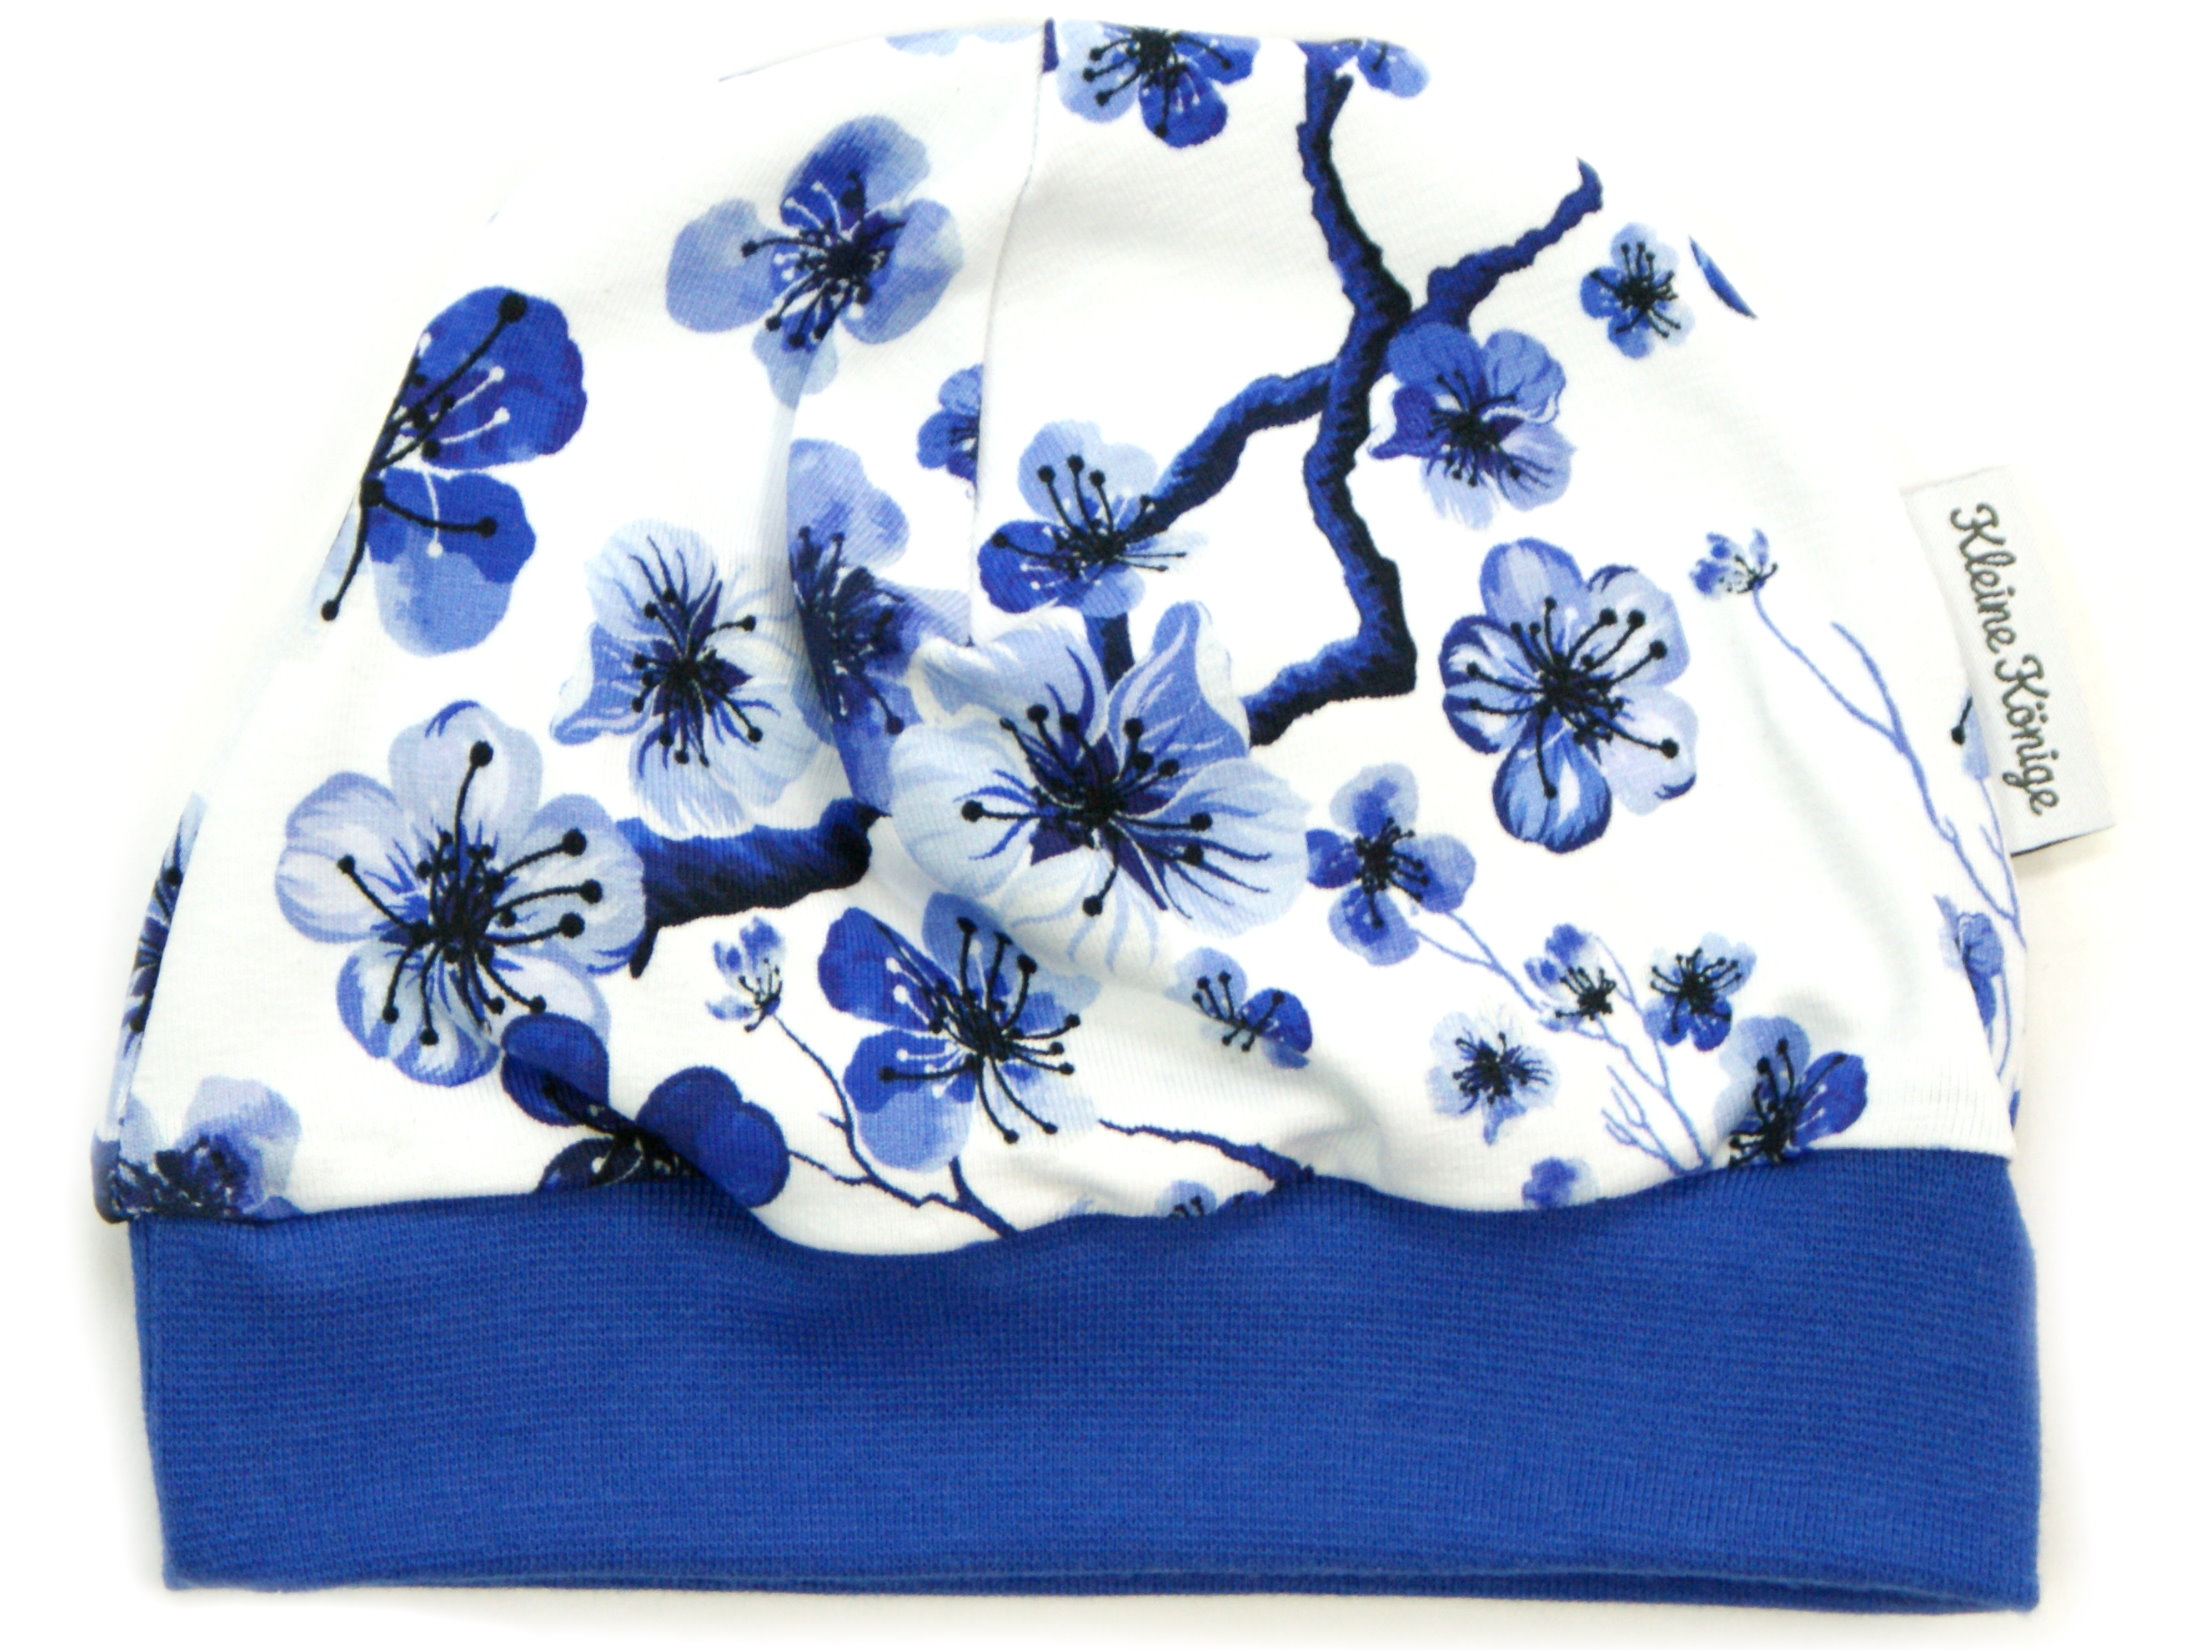 Kindermütze Blumen "Blue Flowers" blau weiß